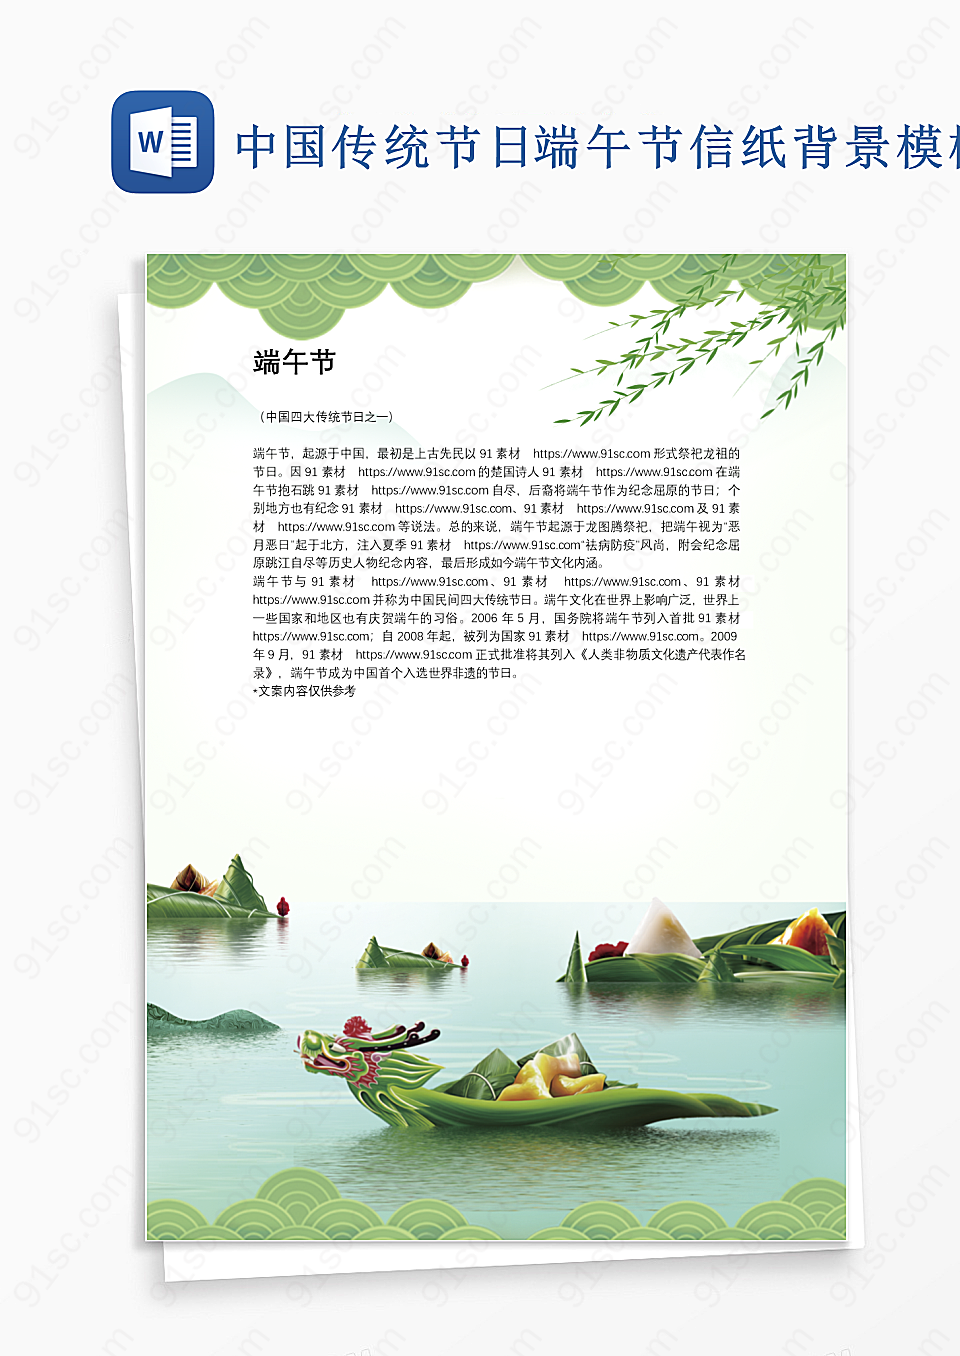 中国传统节日端午节信纸背景模板设计